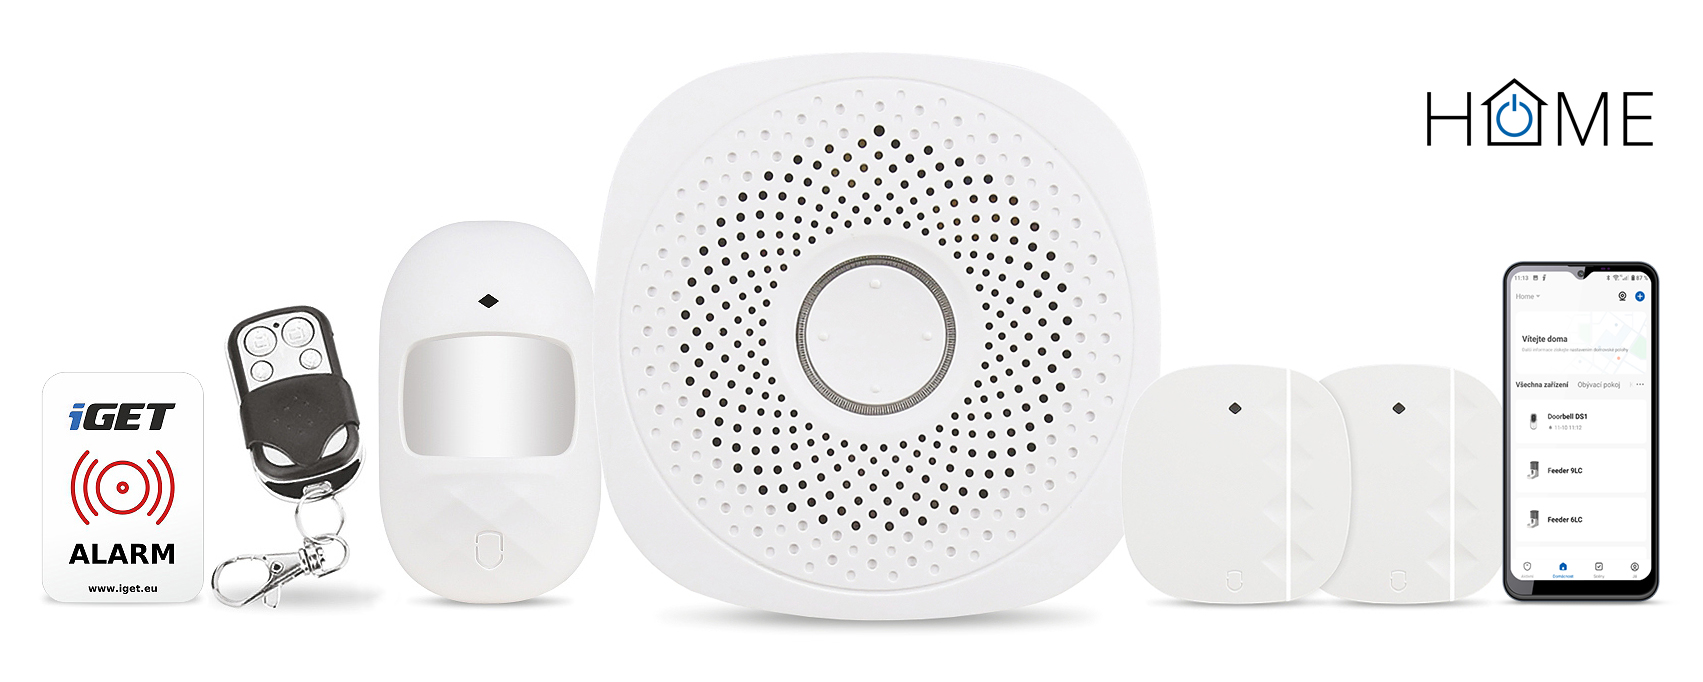 iGET HOME X1 - Inteligentní Wi-Fi alarm, v aplikaci i ovládání IP kame